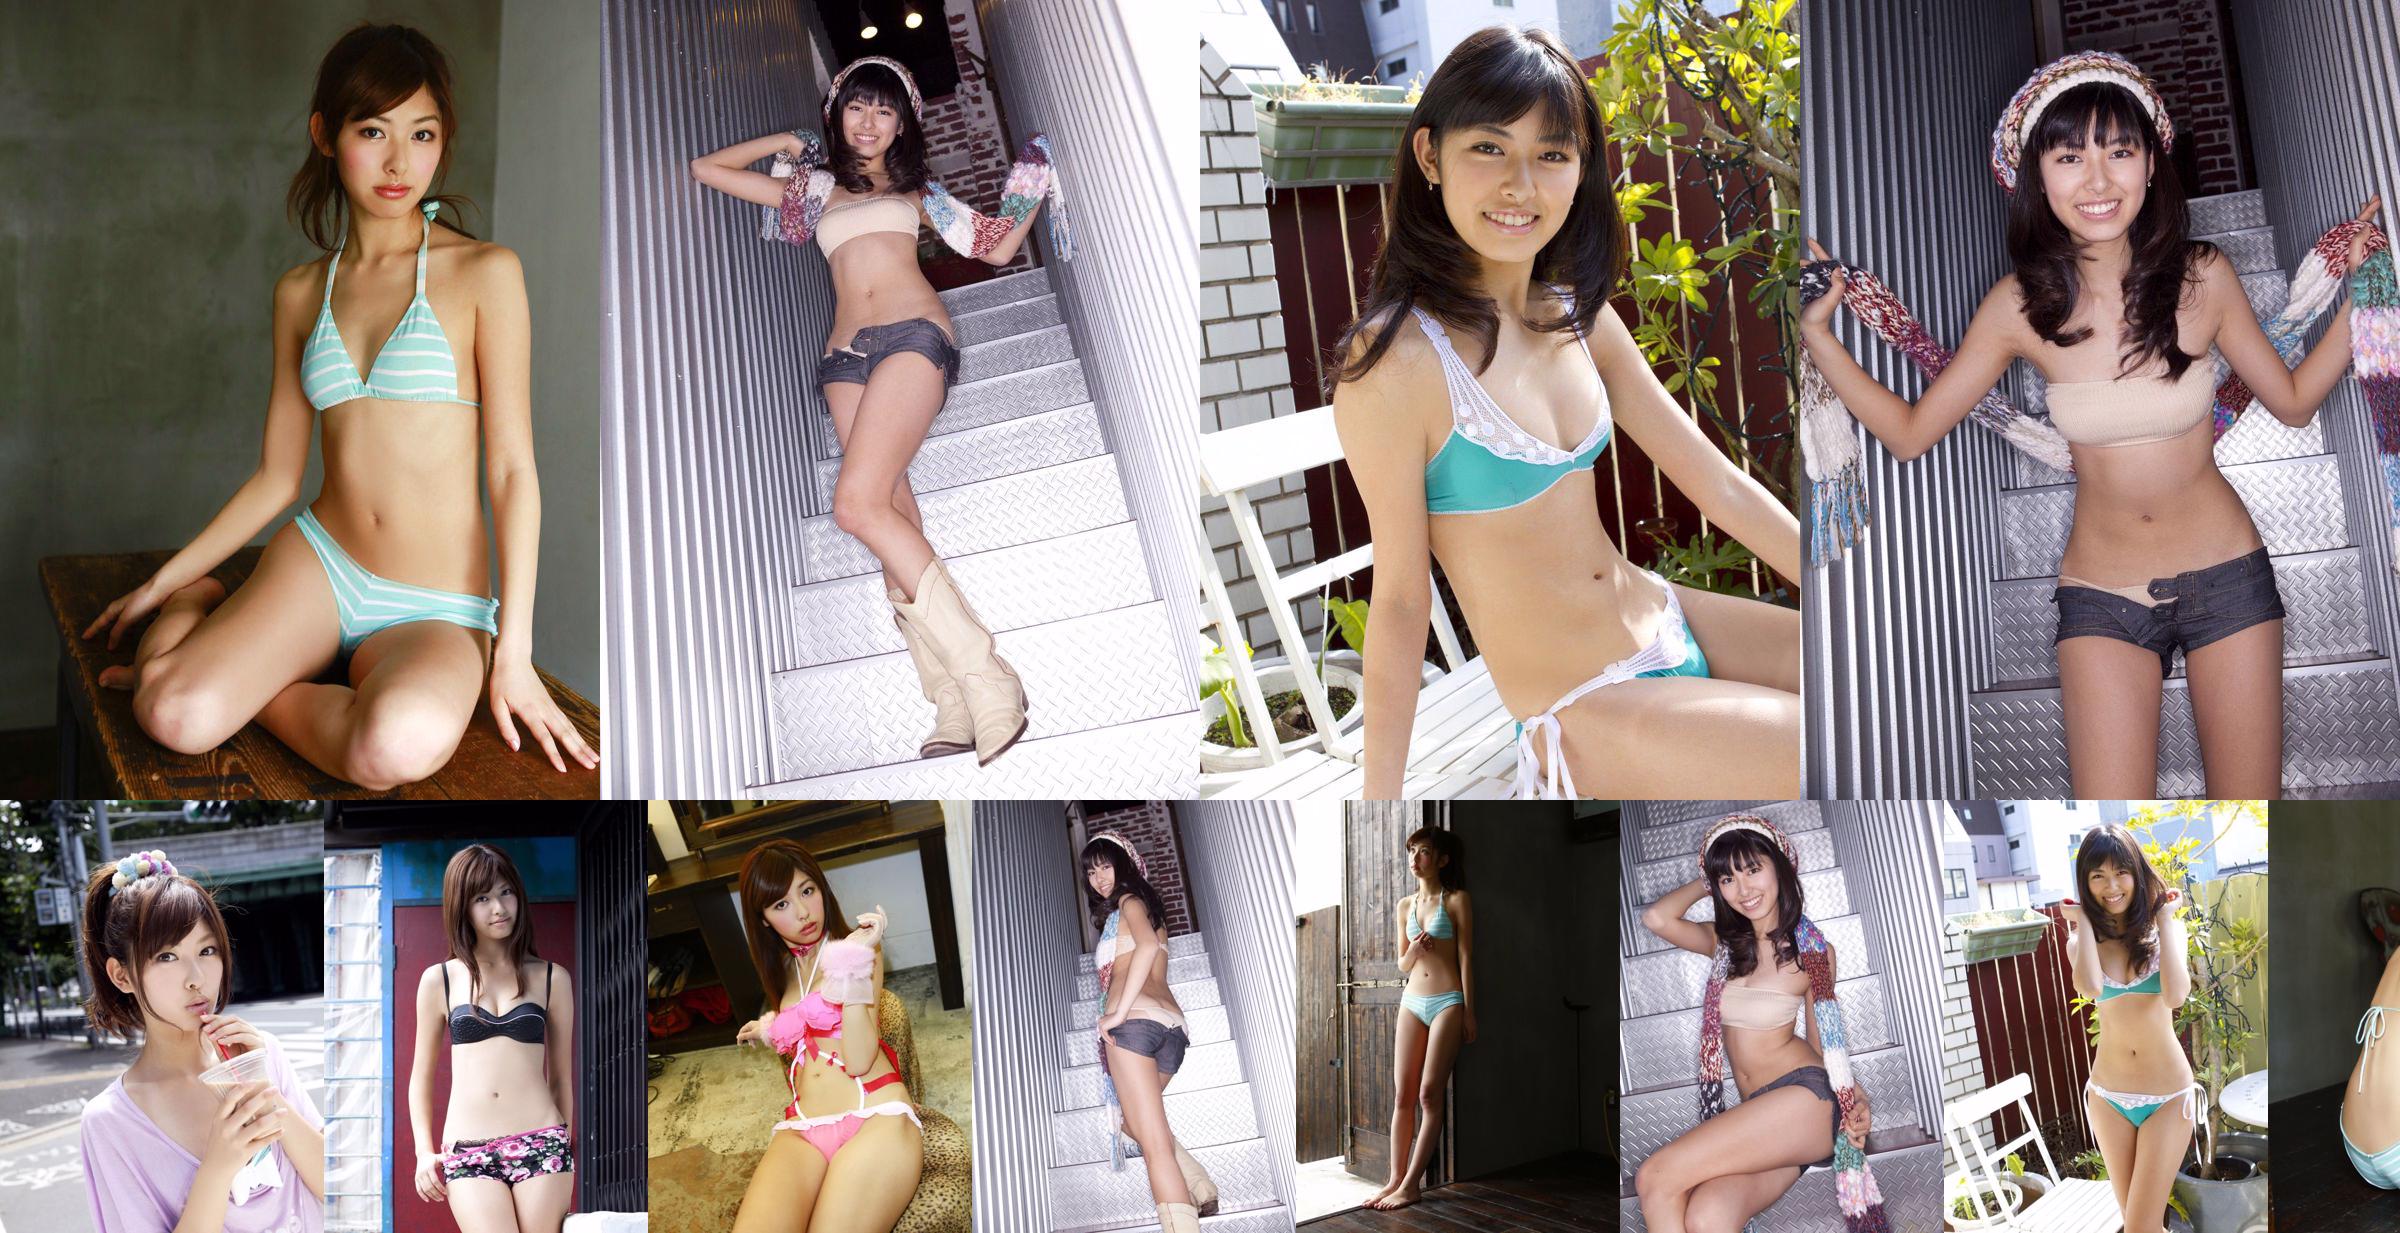 Yurika Tachibana / Yurika Tachibana "Sei ein Baby" [Sabra.net] Streng Mädchen No.6c8da8 Seite 1